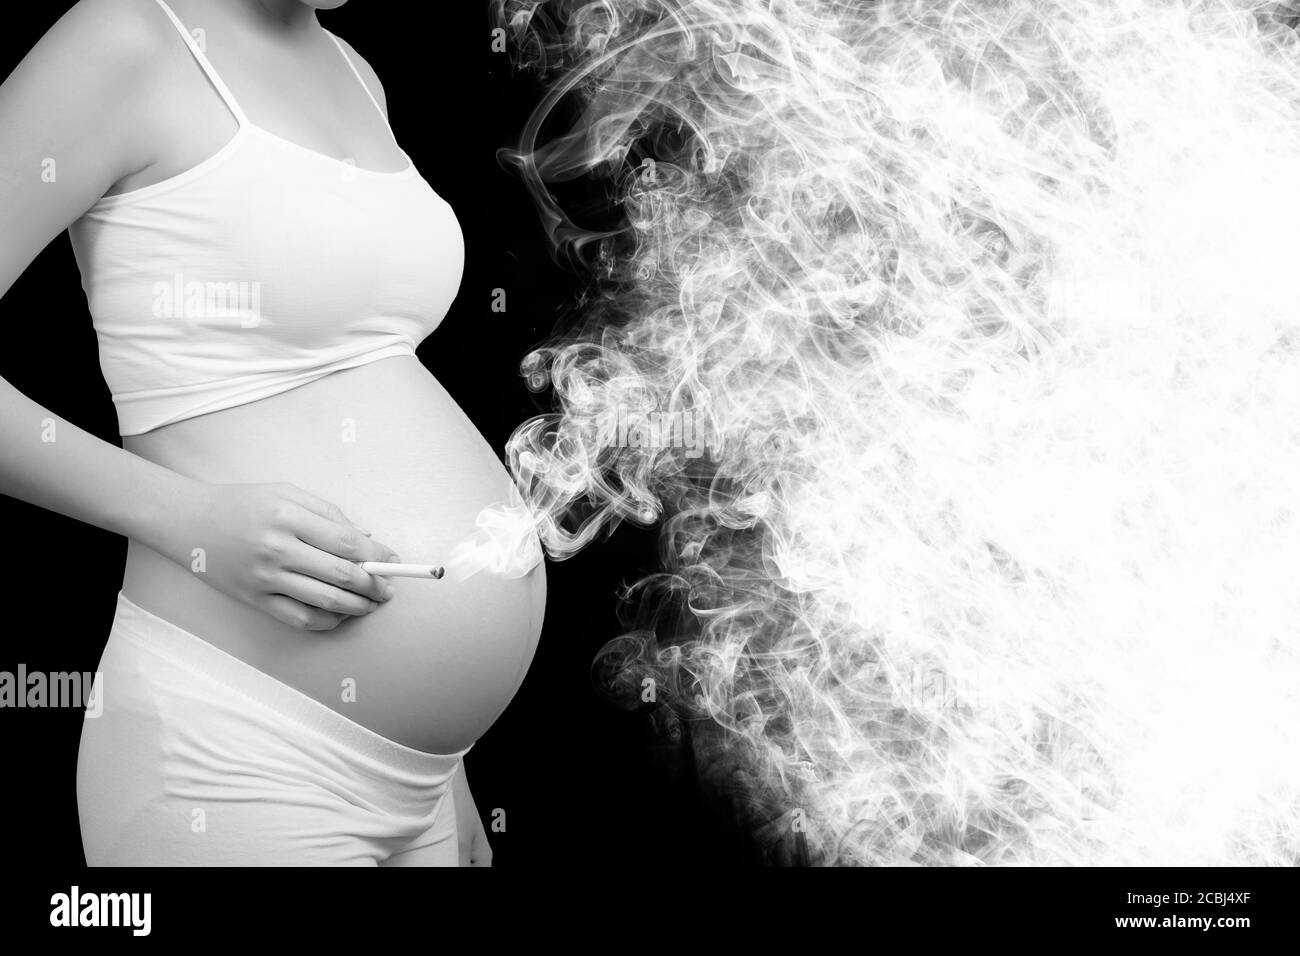 Fumer tue concept : femme enceinte fumer la cigarette cause le cancer , le danger et les risques mortels pour la santé des parents et du bébé. Emplacement vide pour le texte. Banque D'Images